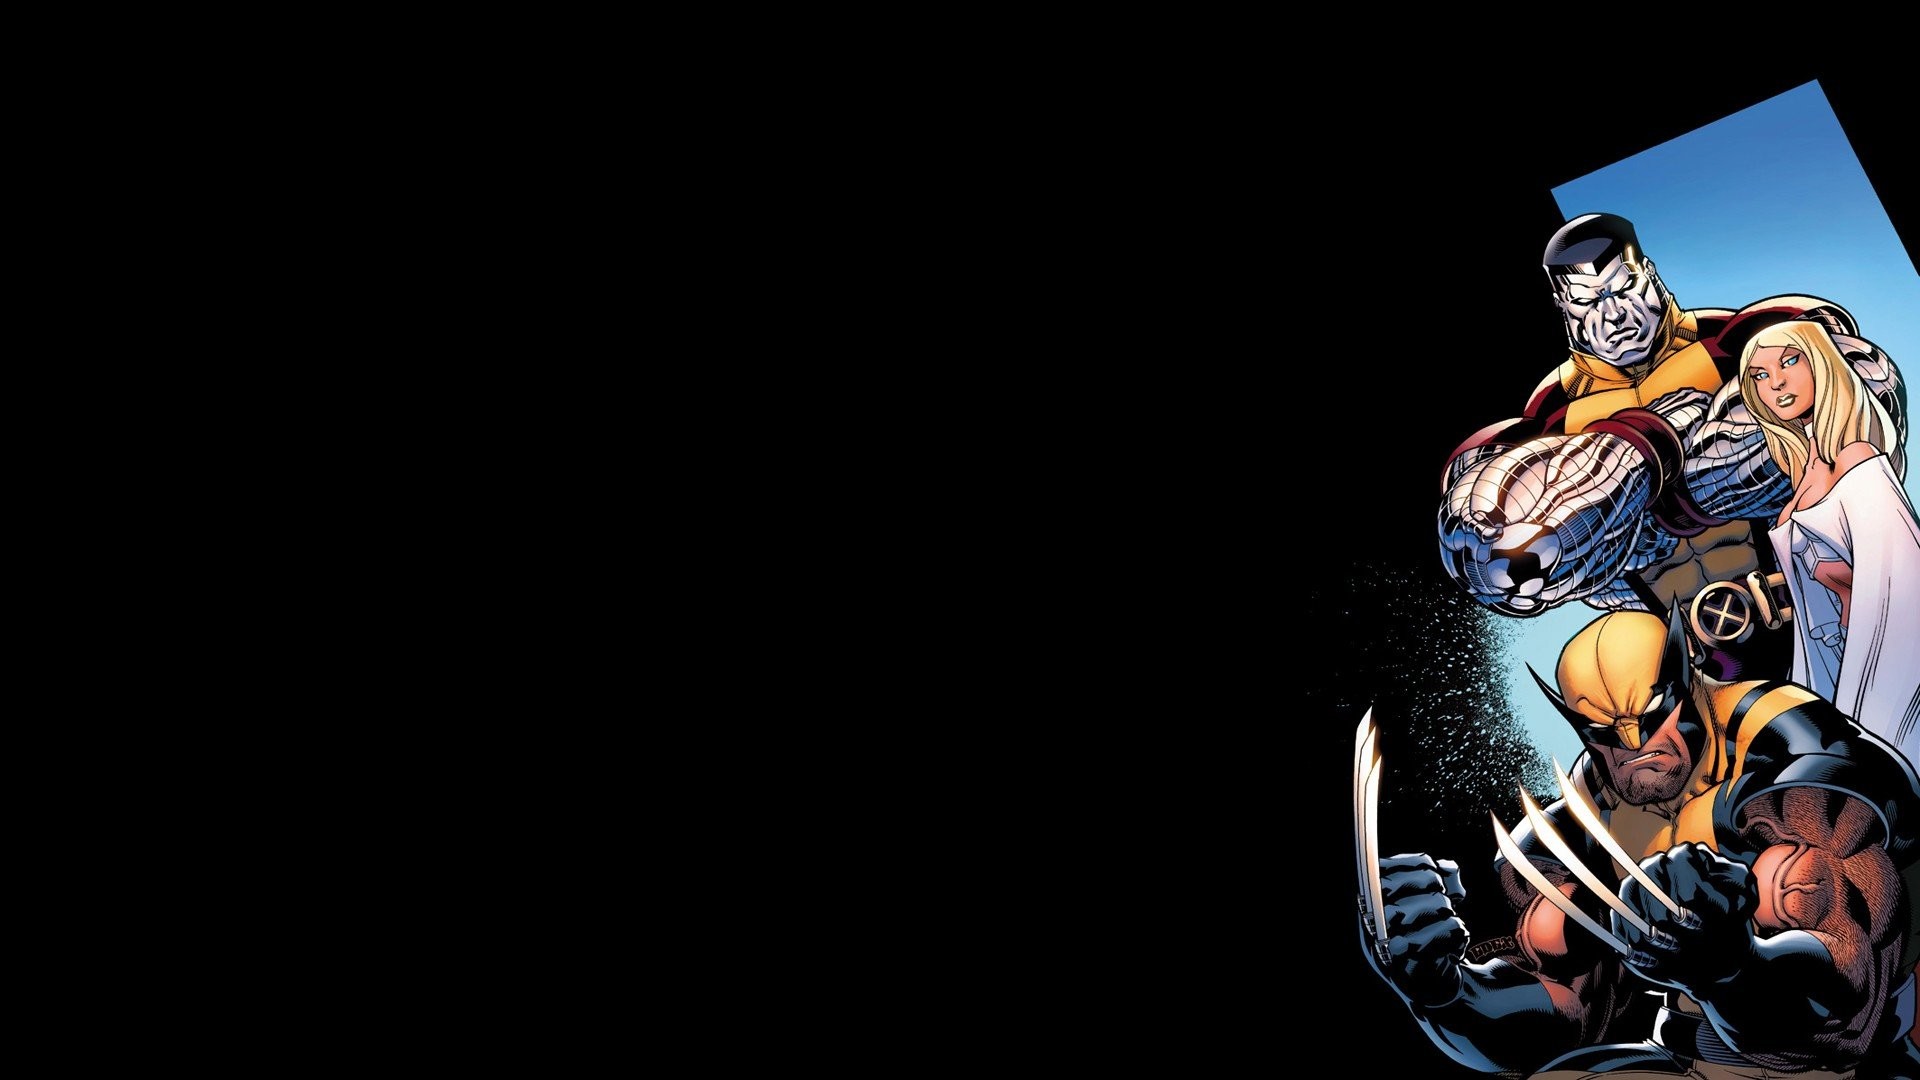 1920x1080 Comics X-Men Wolverine colossus Marvel Comics Emma Frost wallpaper |   | 346037 | WallpaperUP